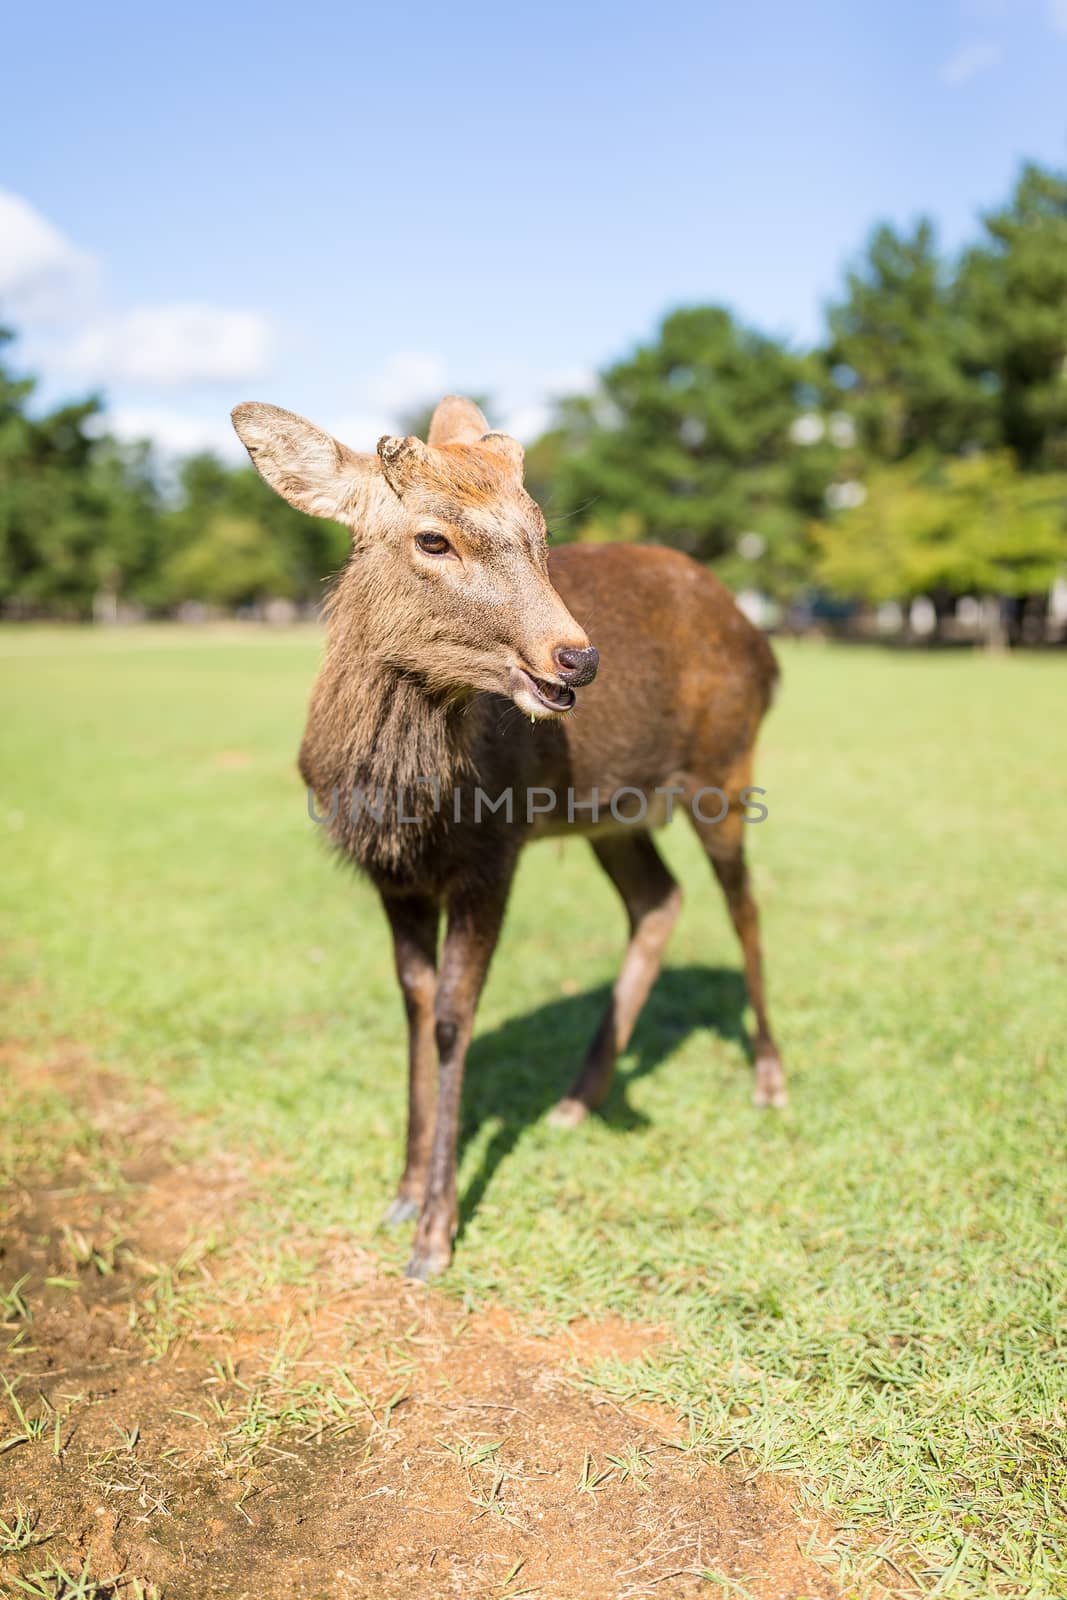 Cute Deer by leungchopan